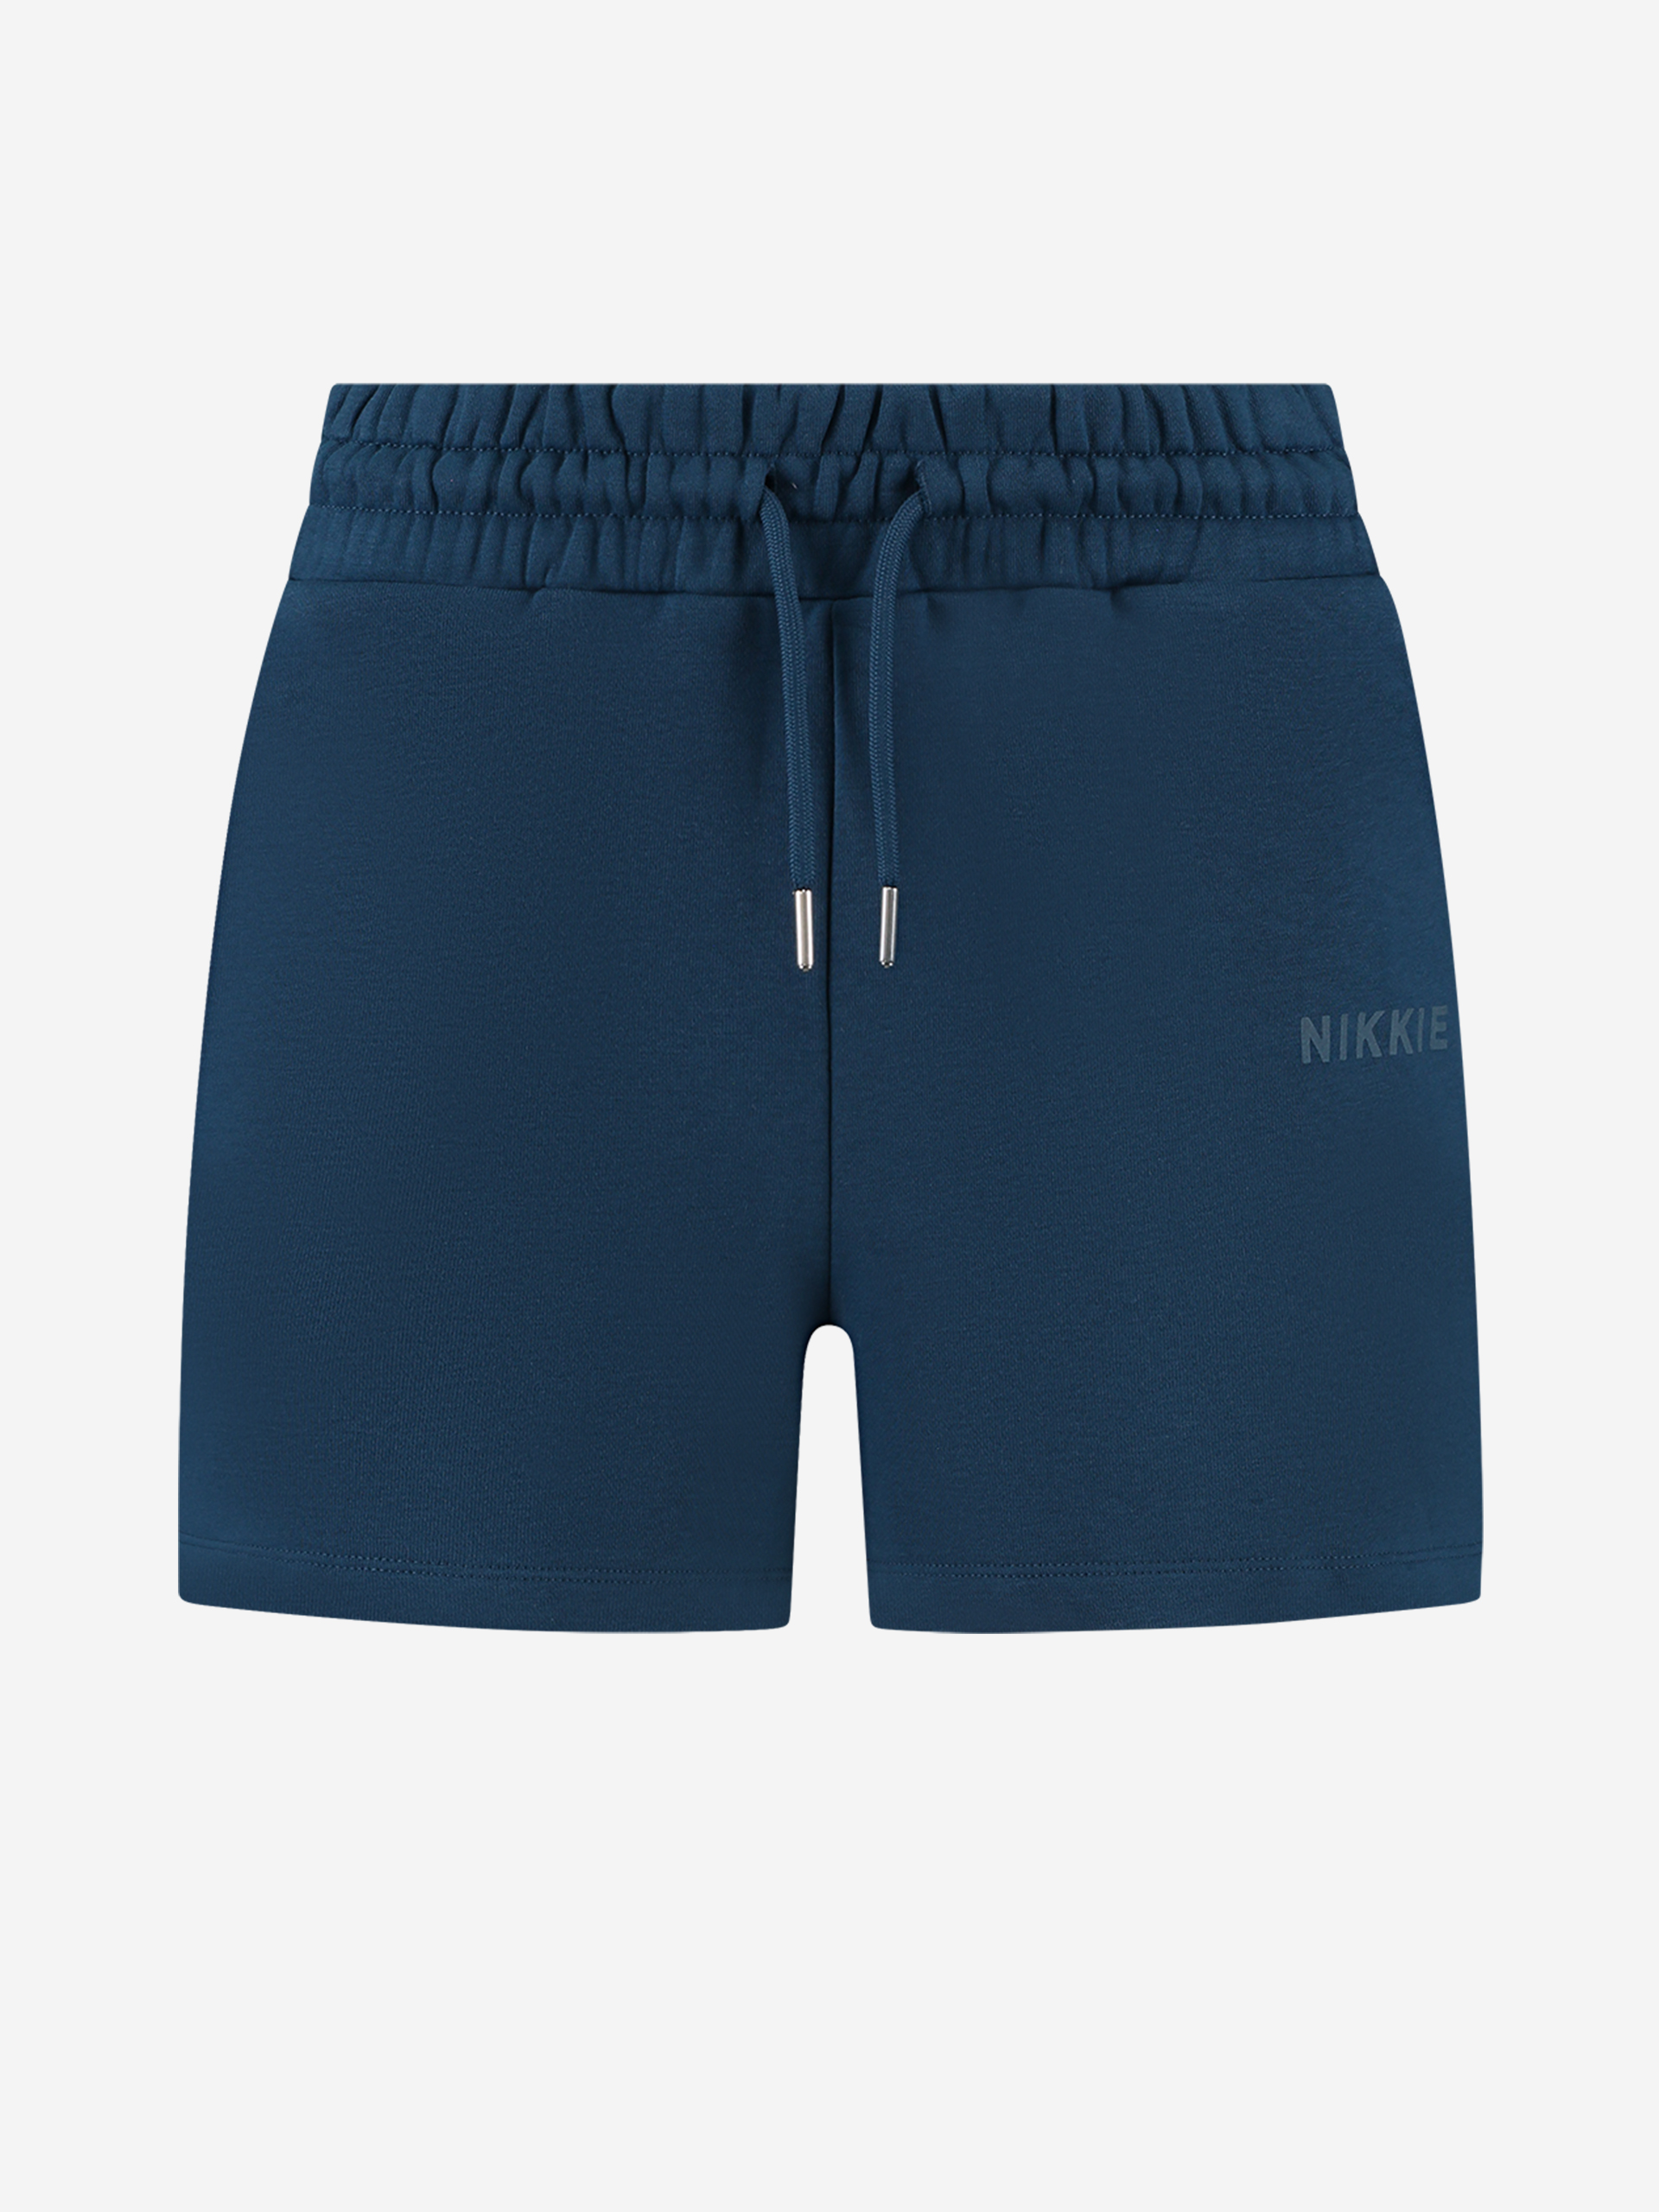 NIKKIE Shorts